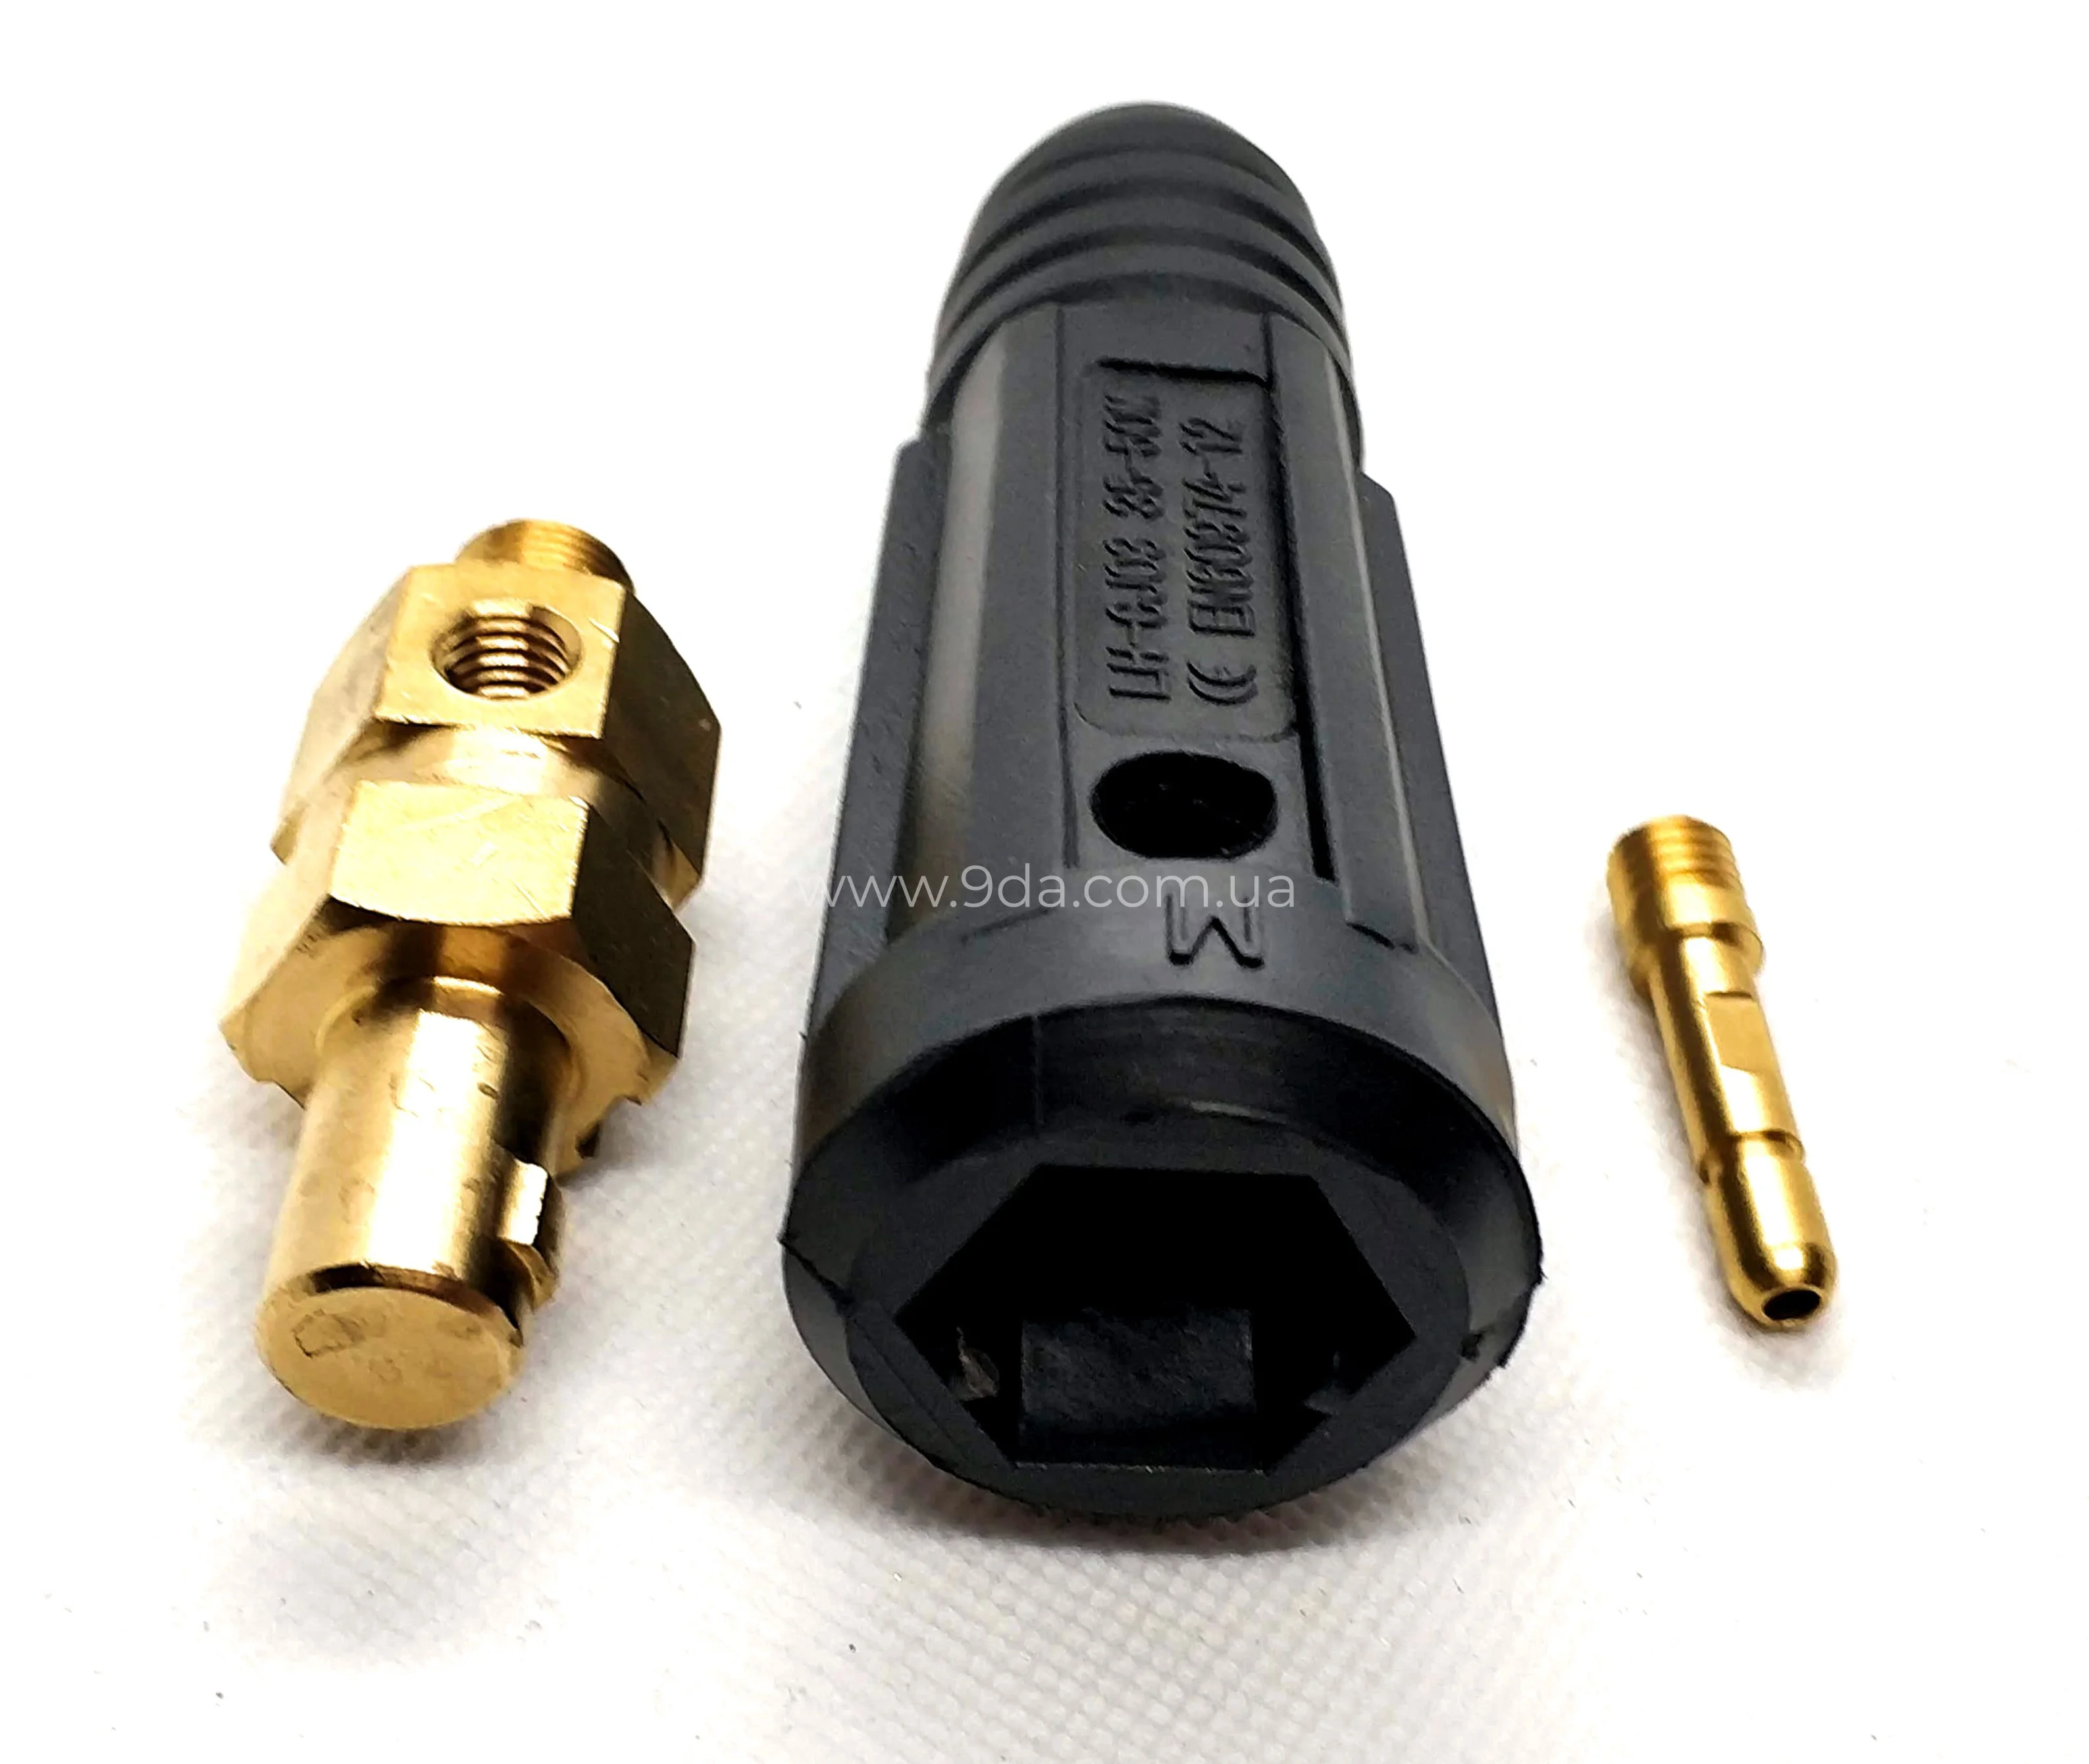 Штекер на кабеля, байонентне під газ TIG 35-50мм, ф12,7мм, M12x1мм, KWeld - 3